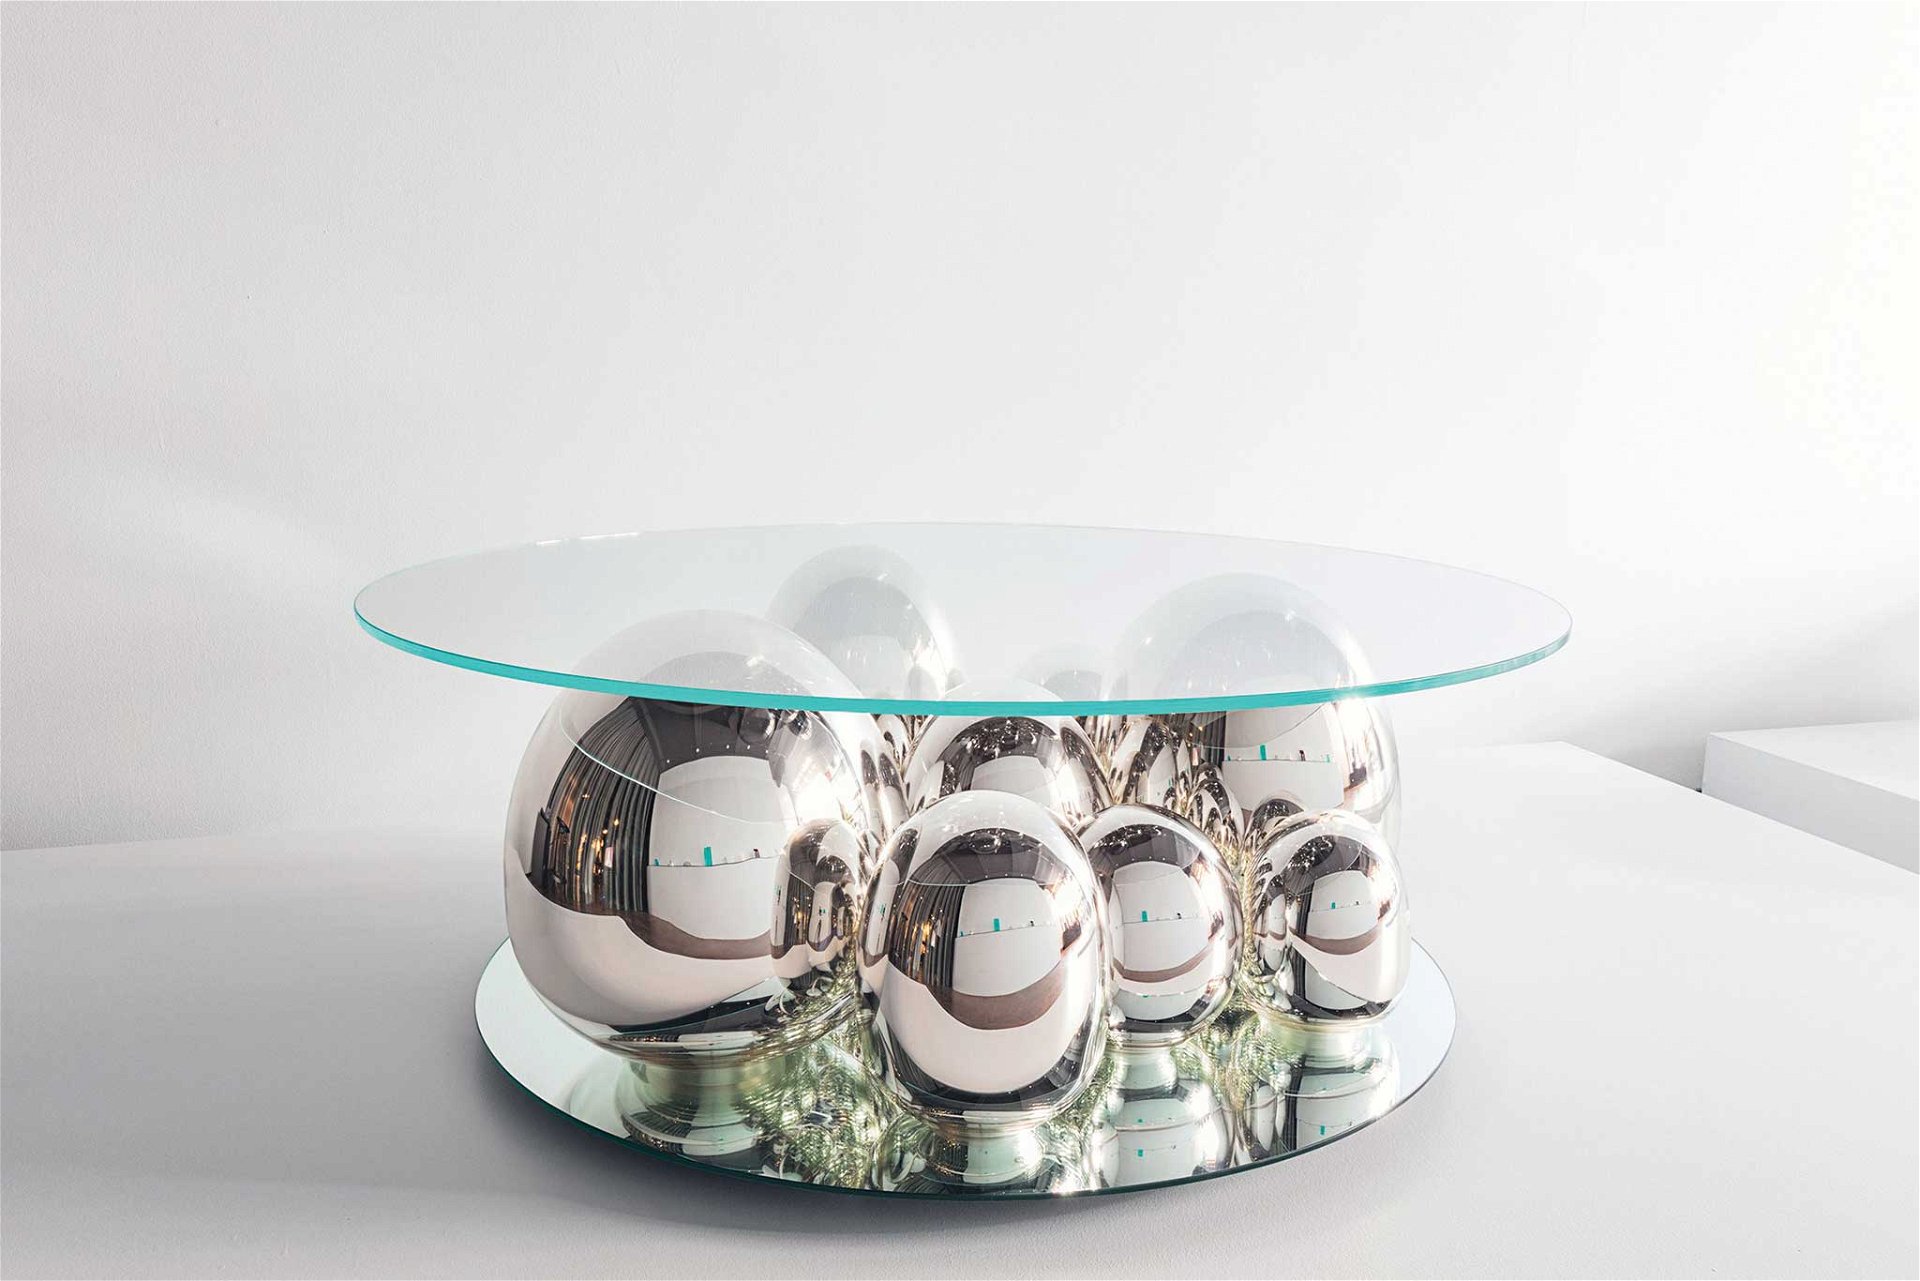 John Hogan ist für seine Glas-designs bekannt – von kleineren Objekten bis hin zu diesem komplexen Coffeetable. johnhogandesigns.com